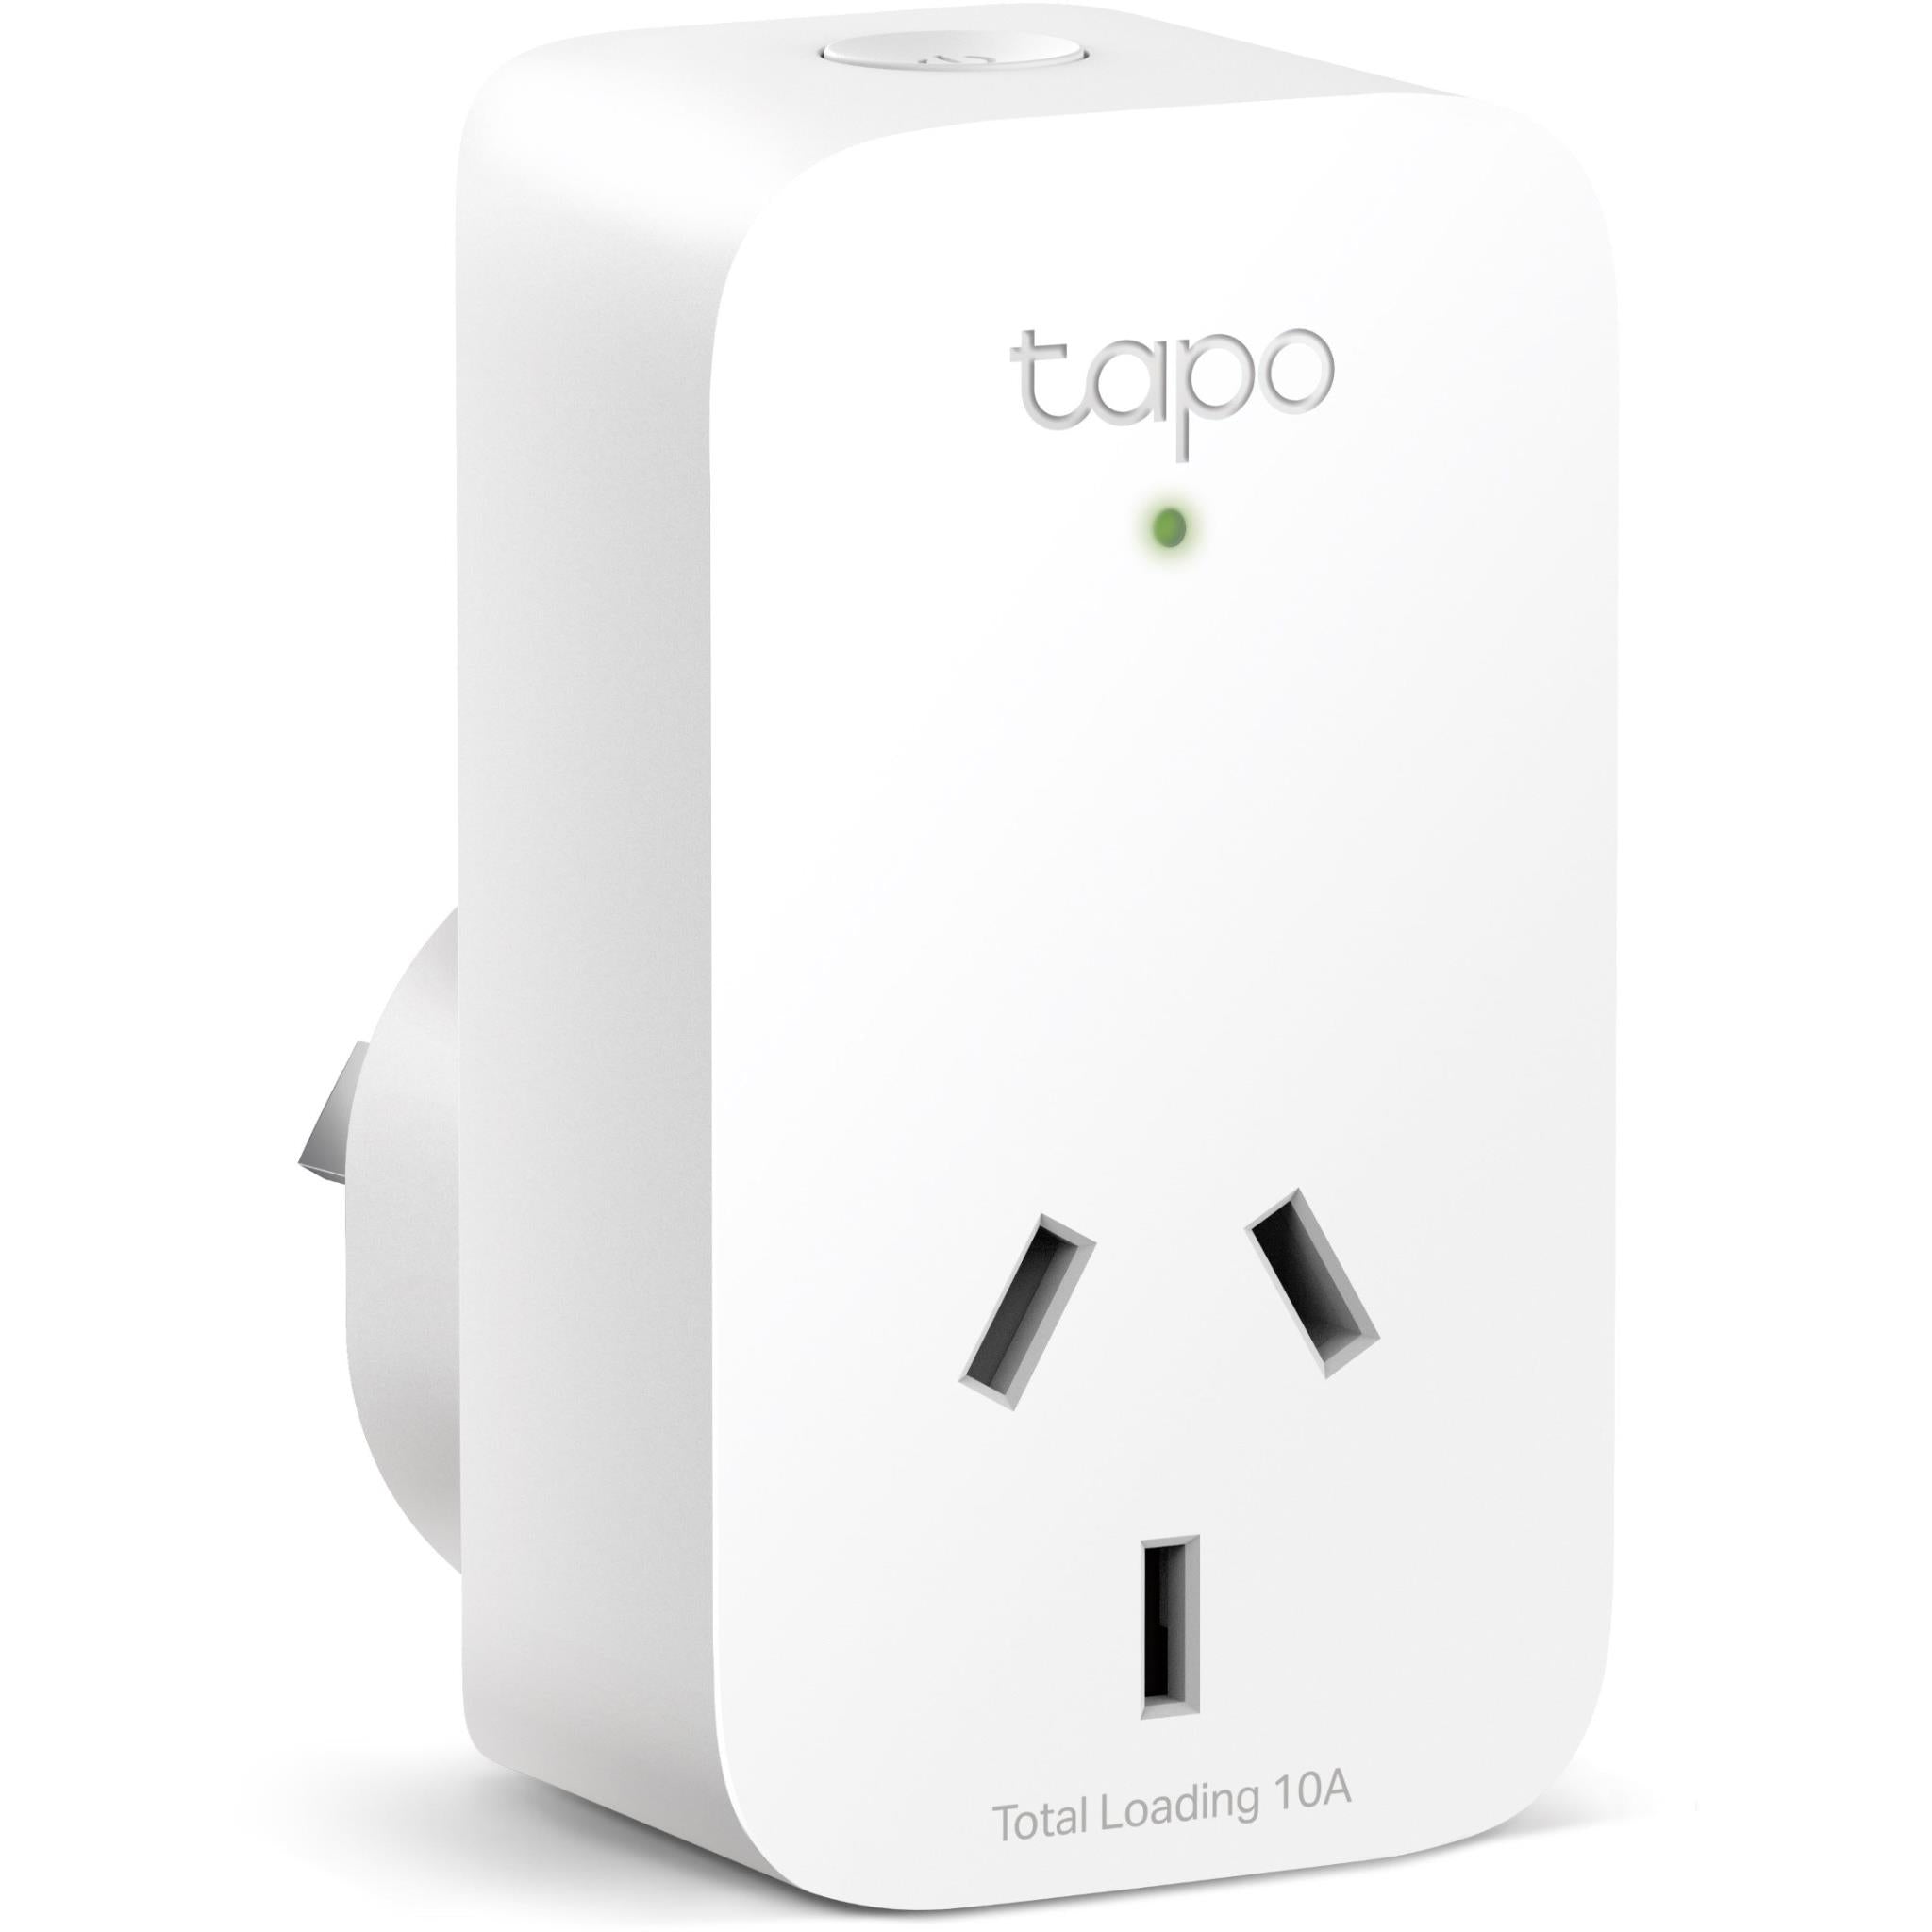 TP-Link Tapo 2K Wireless Video Doorbell with Hub - JB Hi-Fi